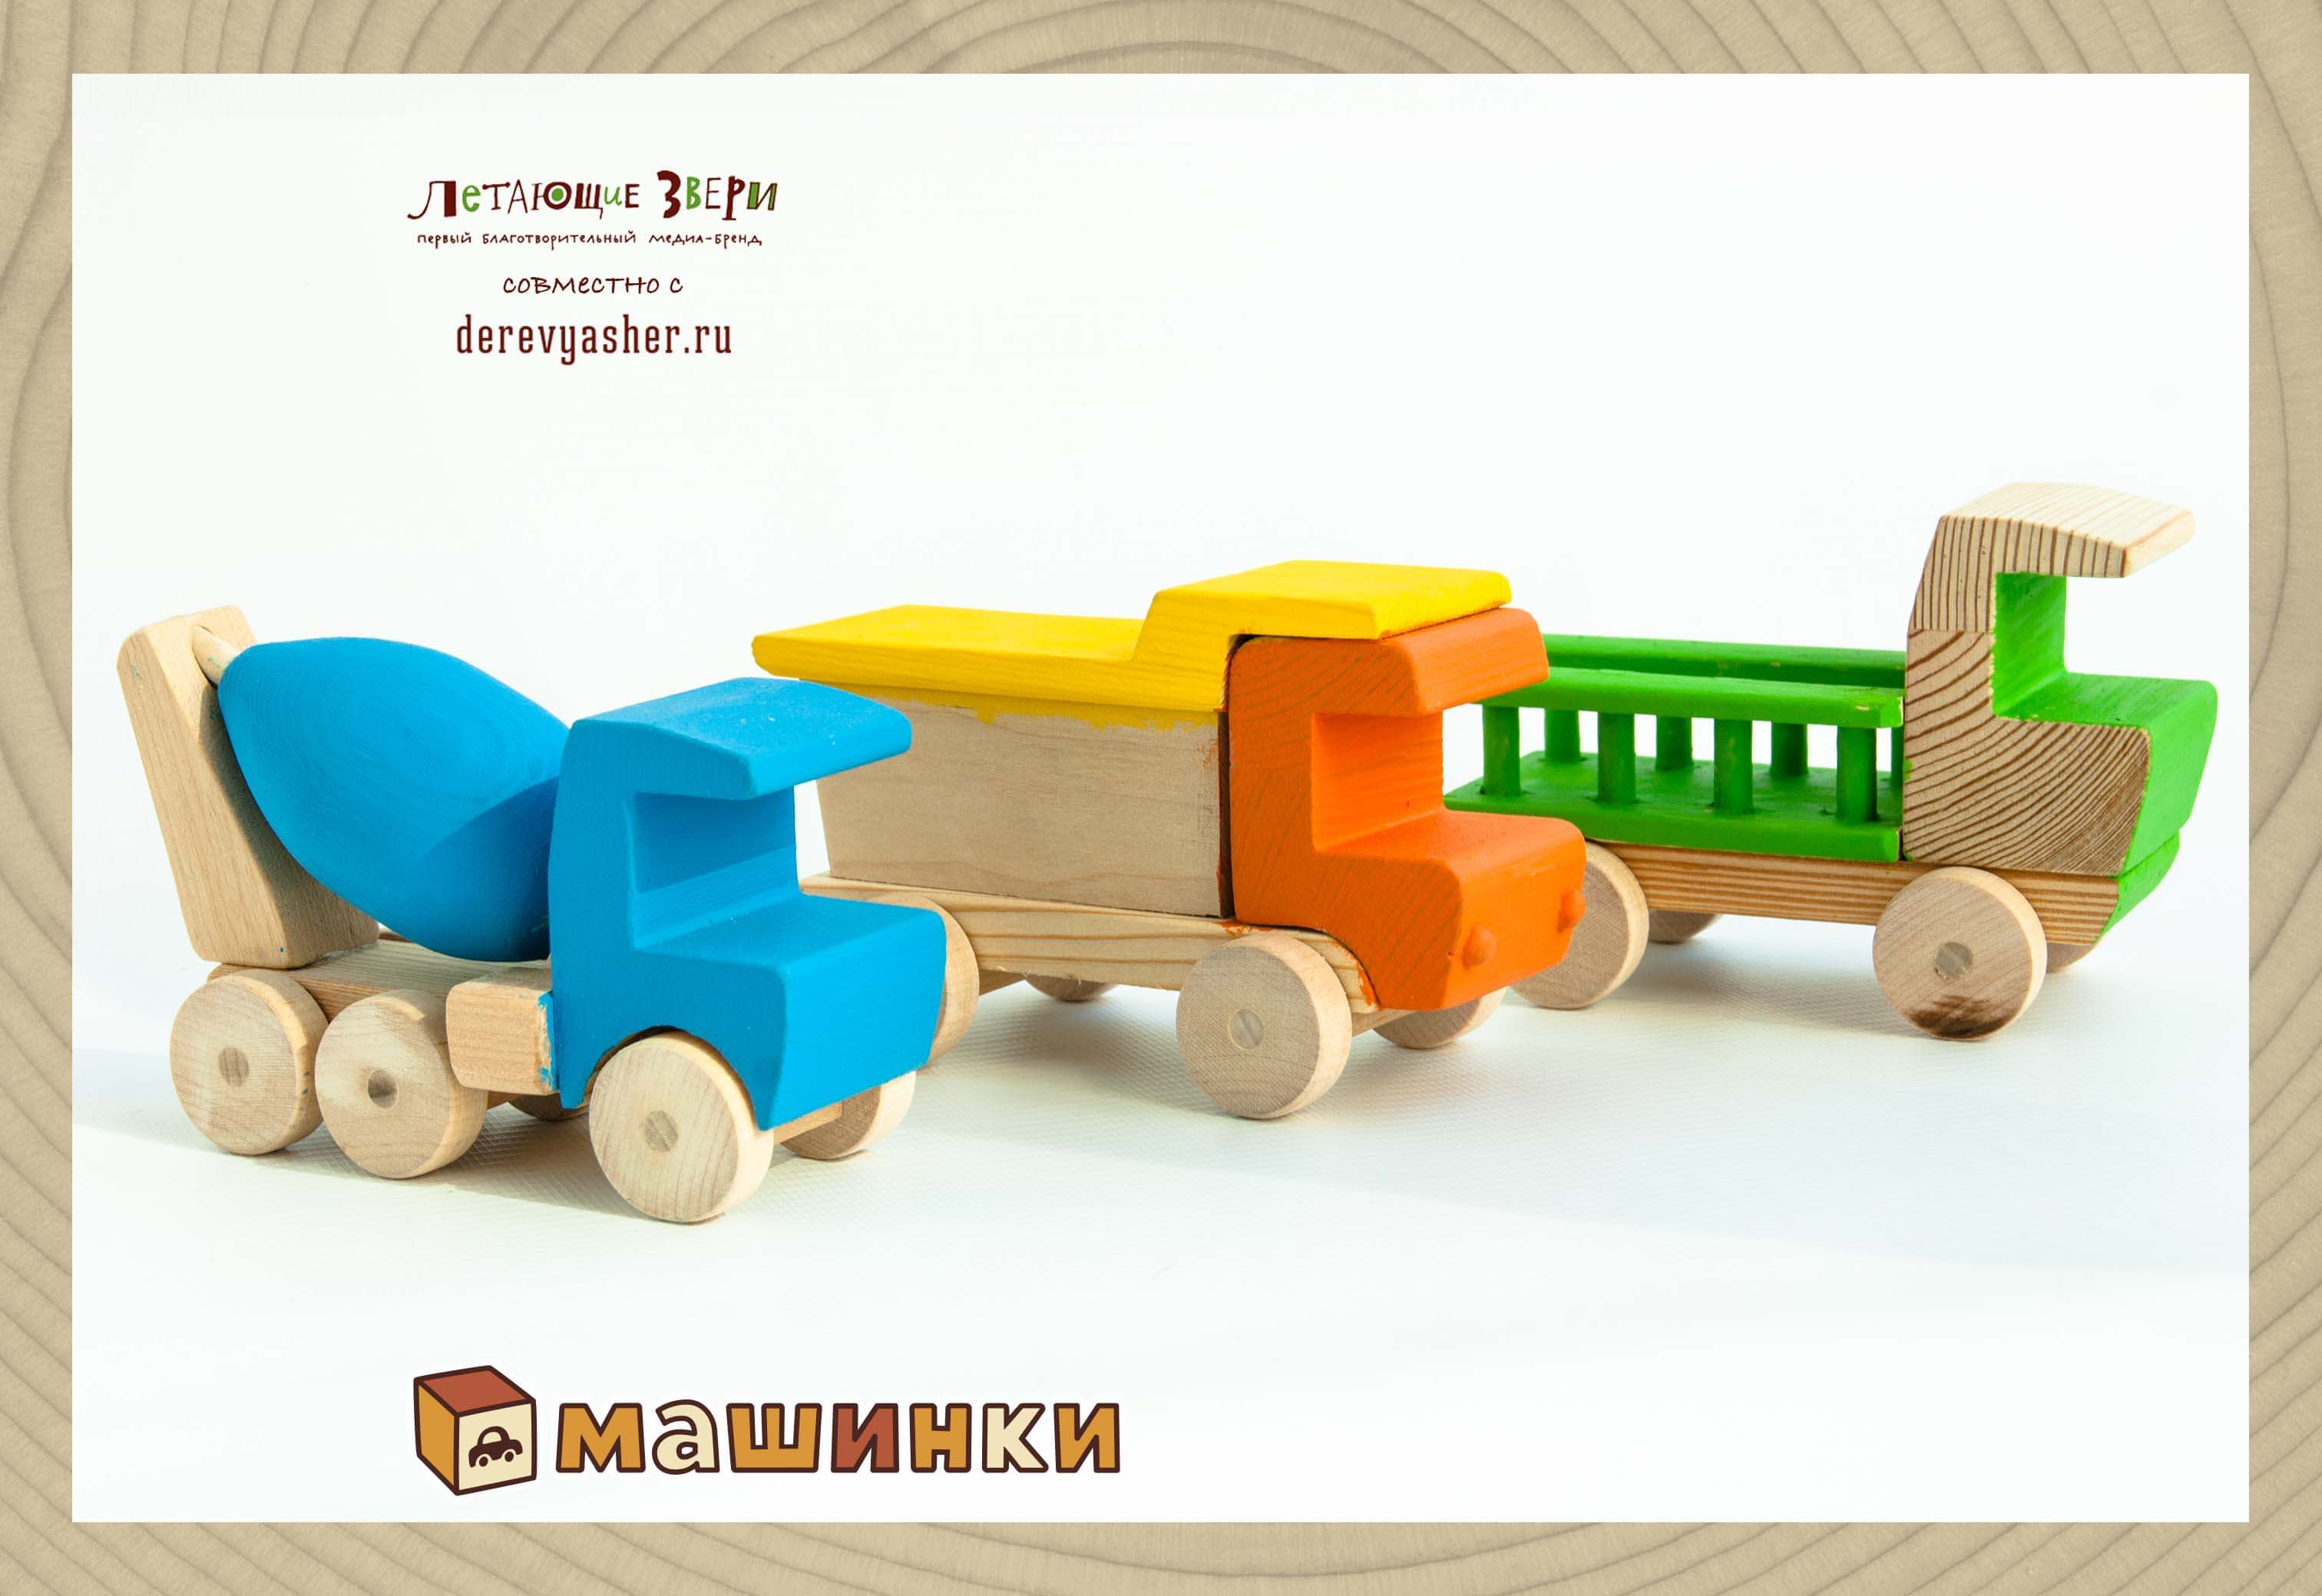 Игрушечный деревянный поезд - паровоз и вагоны, техника, деревянные игрушки машинки транспорт